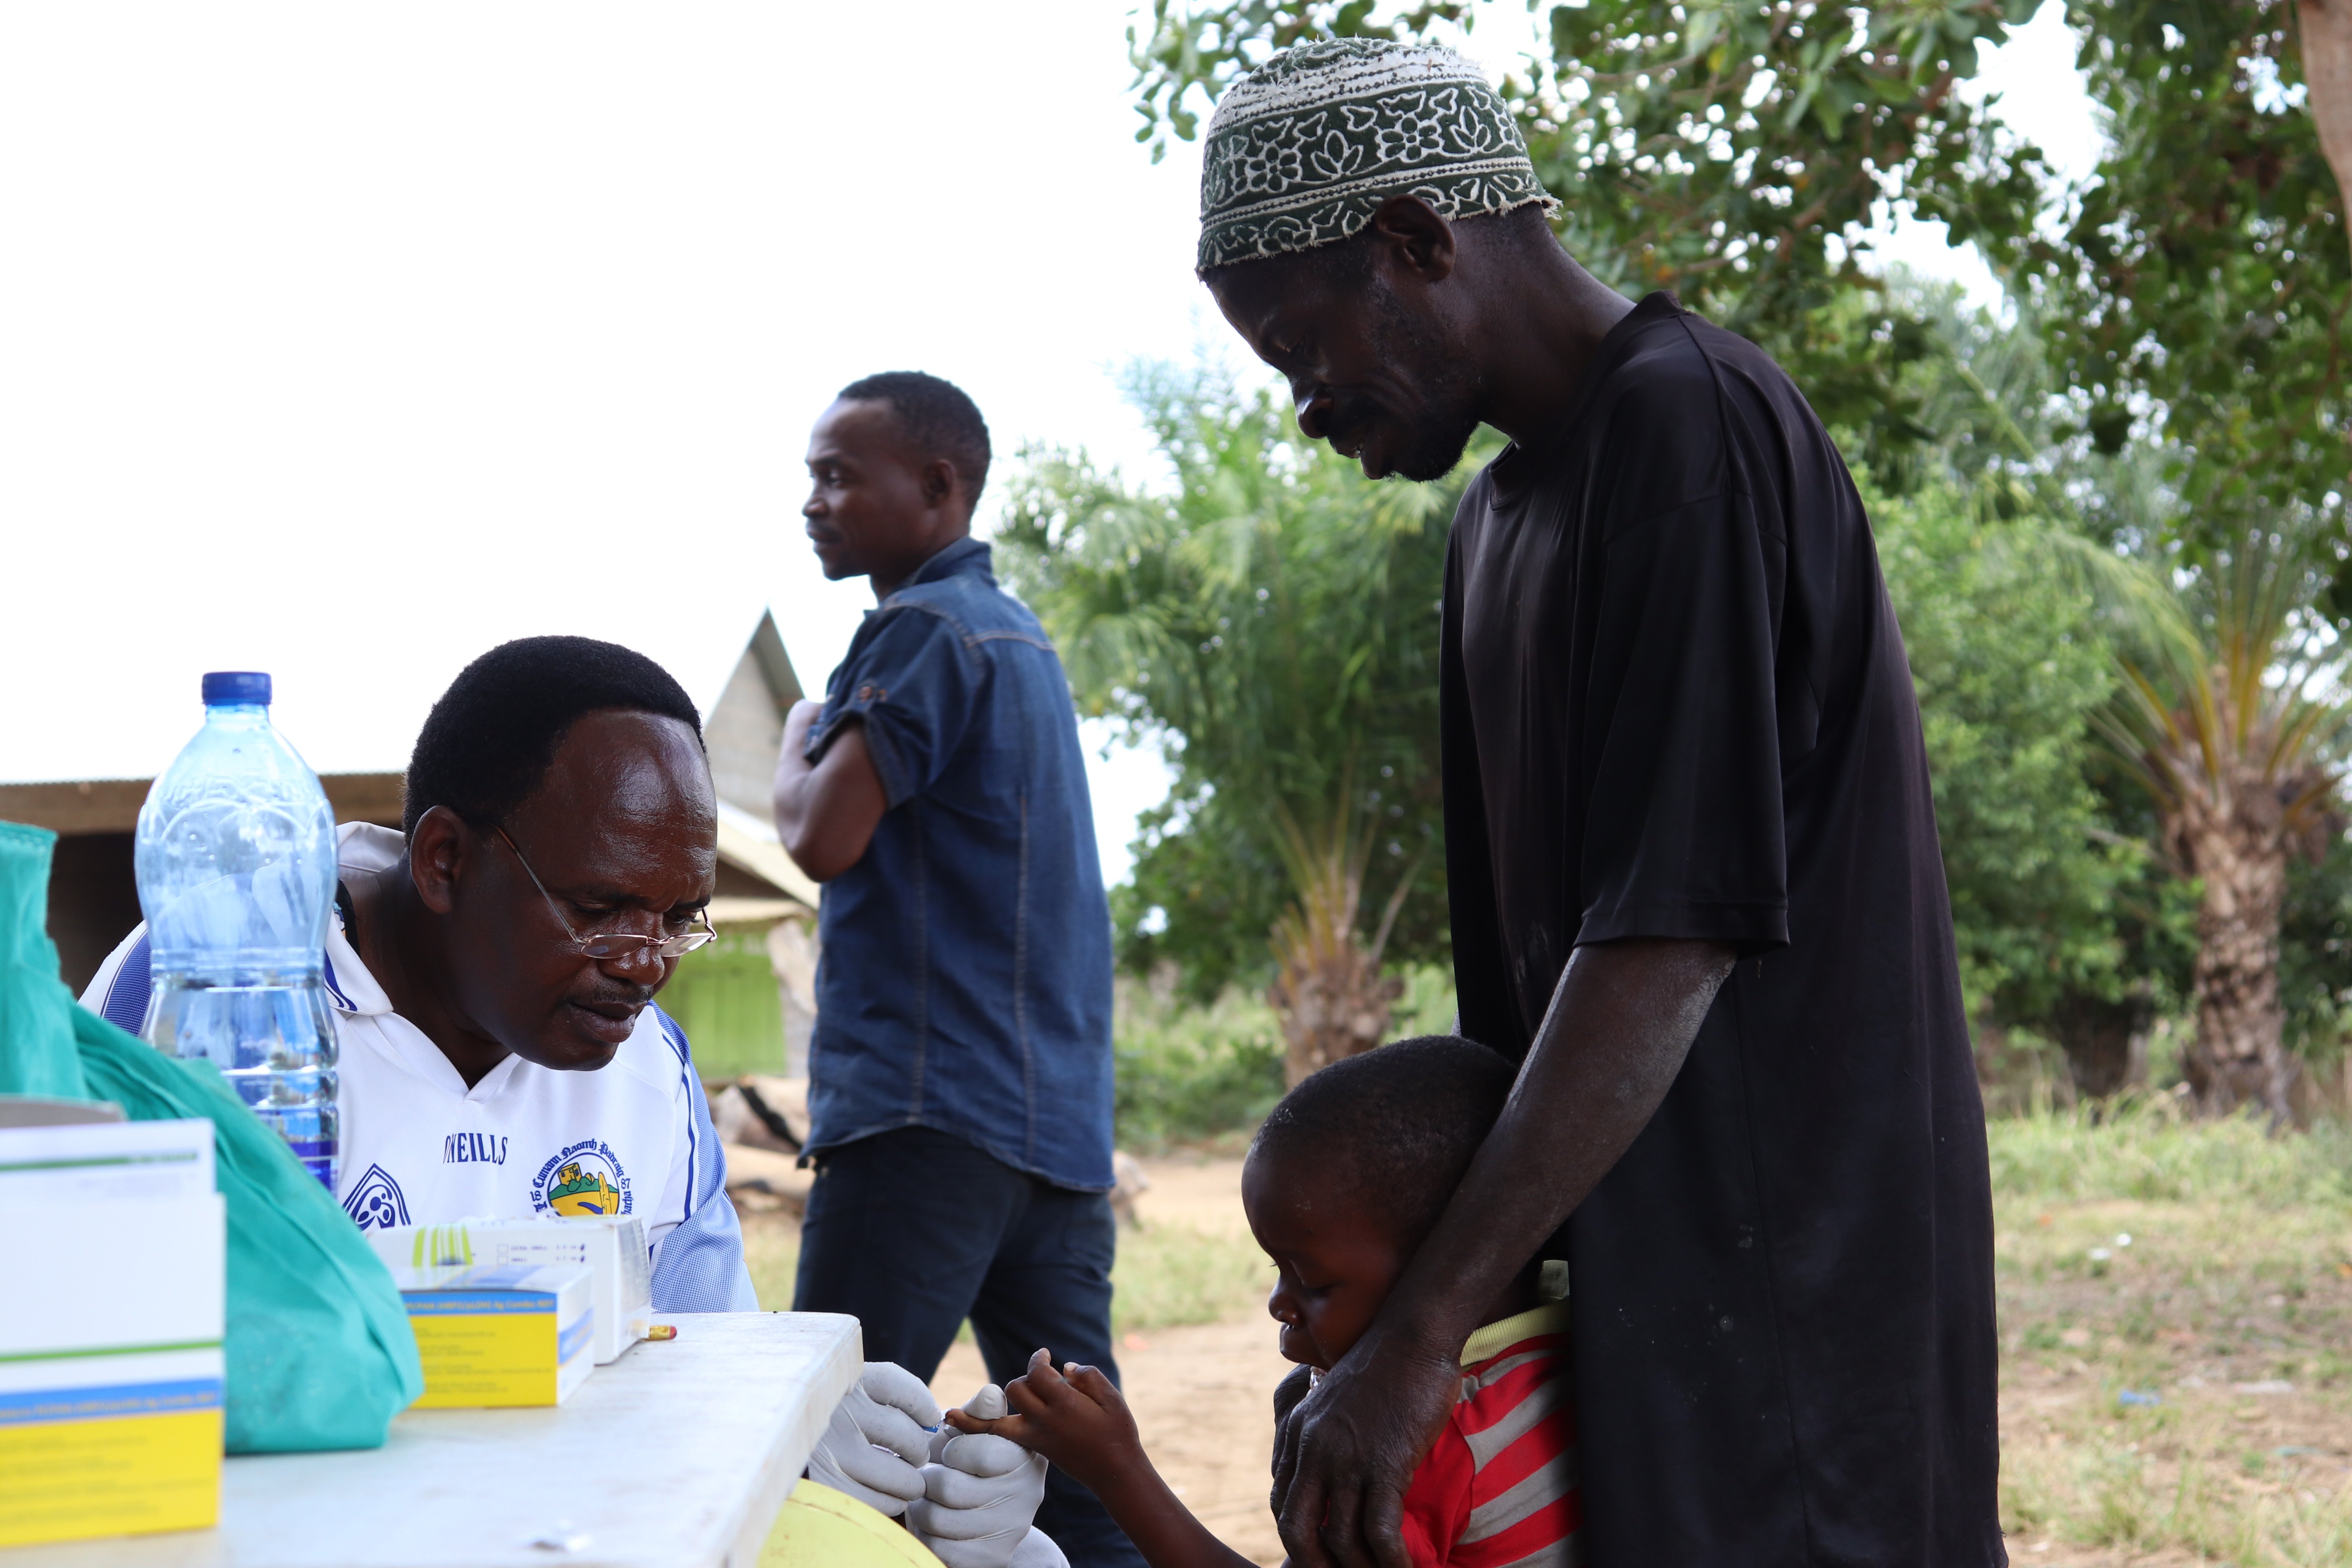 MALARIA: New approach successfully cuts malaria cases in Tanzania